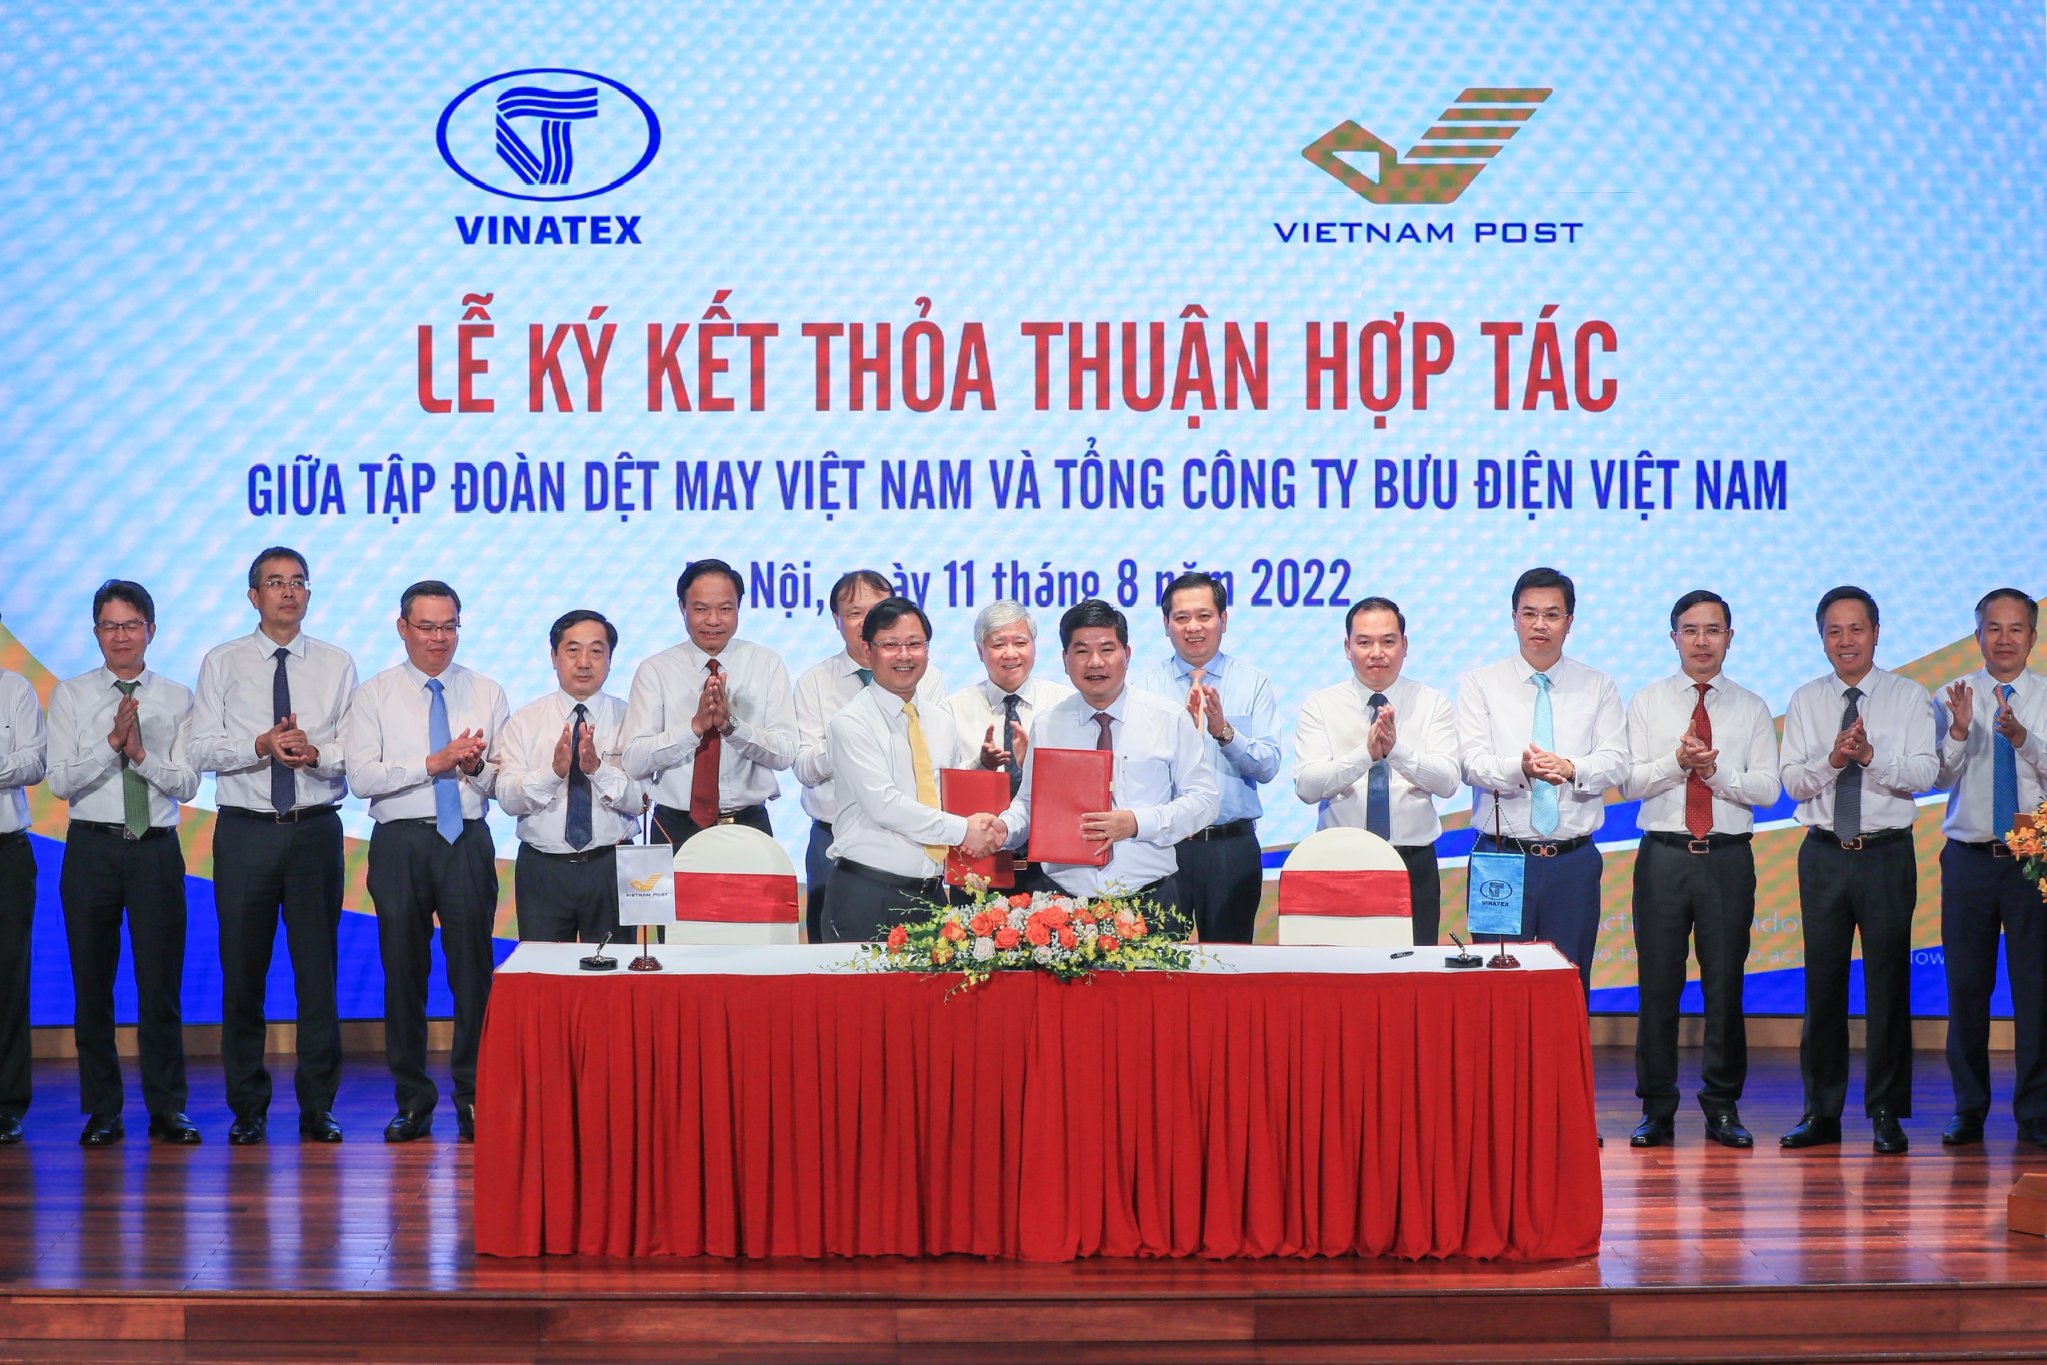 Ký kết thỏa thuận hợp tác giữa Tập đoàn Dệt may Việt Nam và Tổng Công ty Bưu điện Việt Nam.